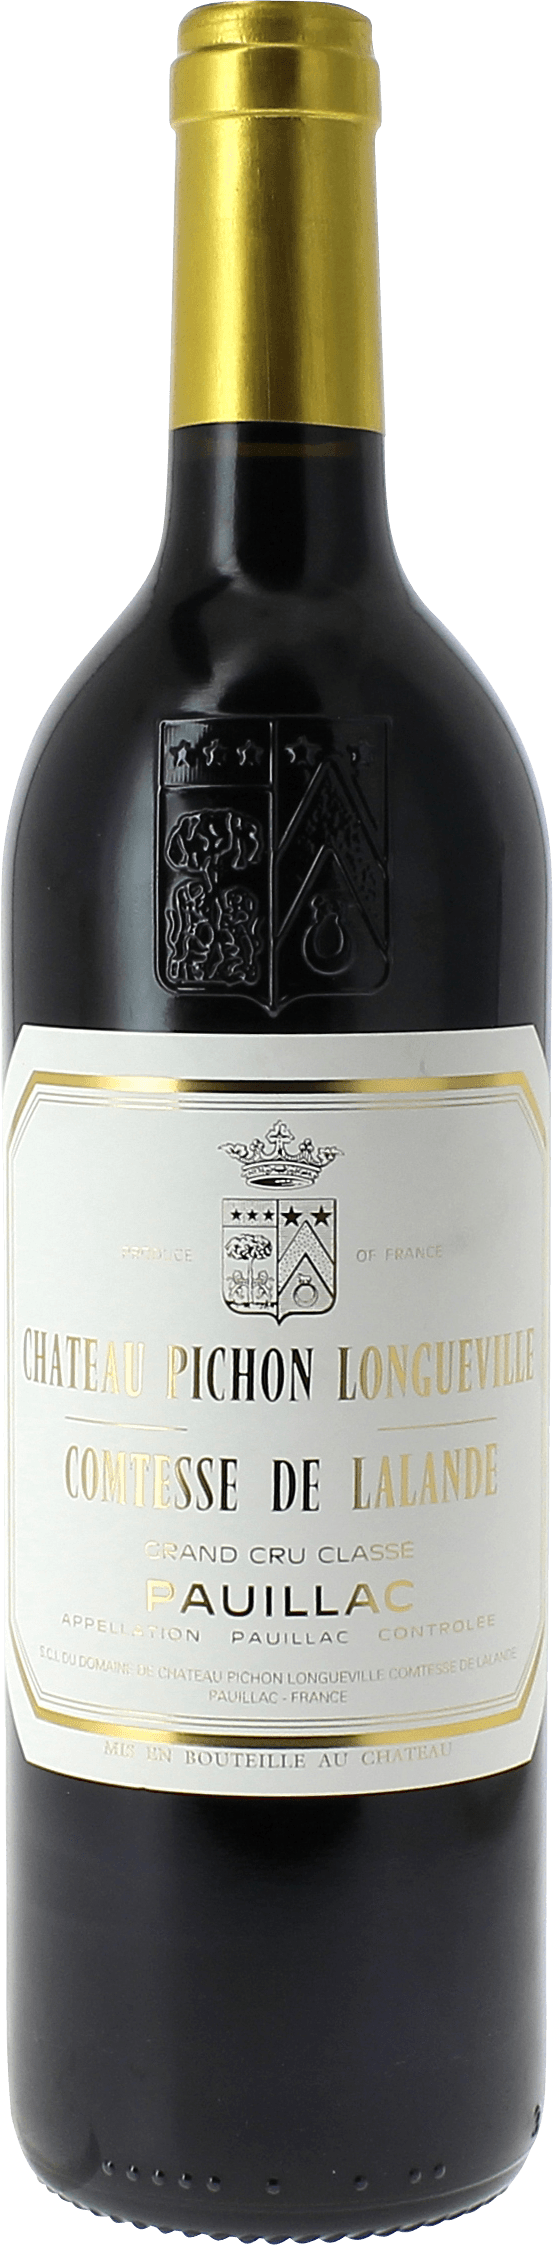 Pichon comtesse de lalande 2012 2me Grand cru class Pauillac, Bordeaux rouge